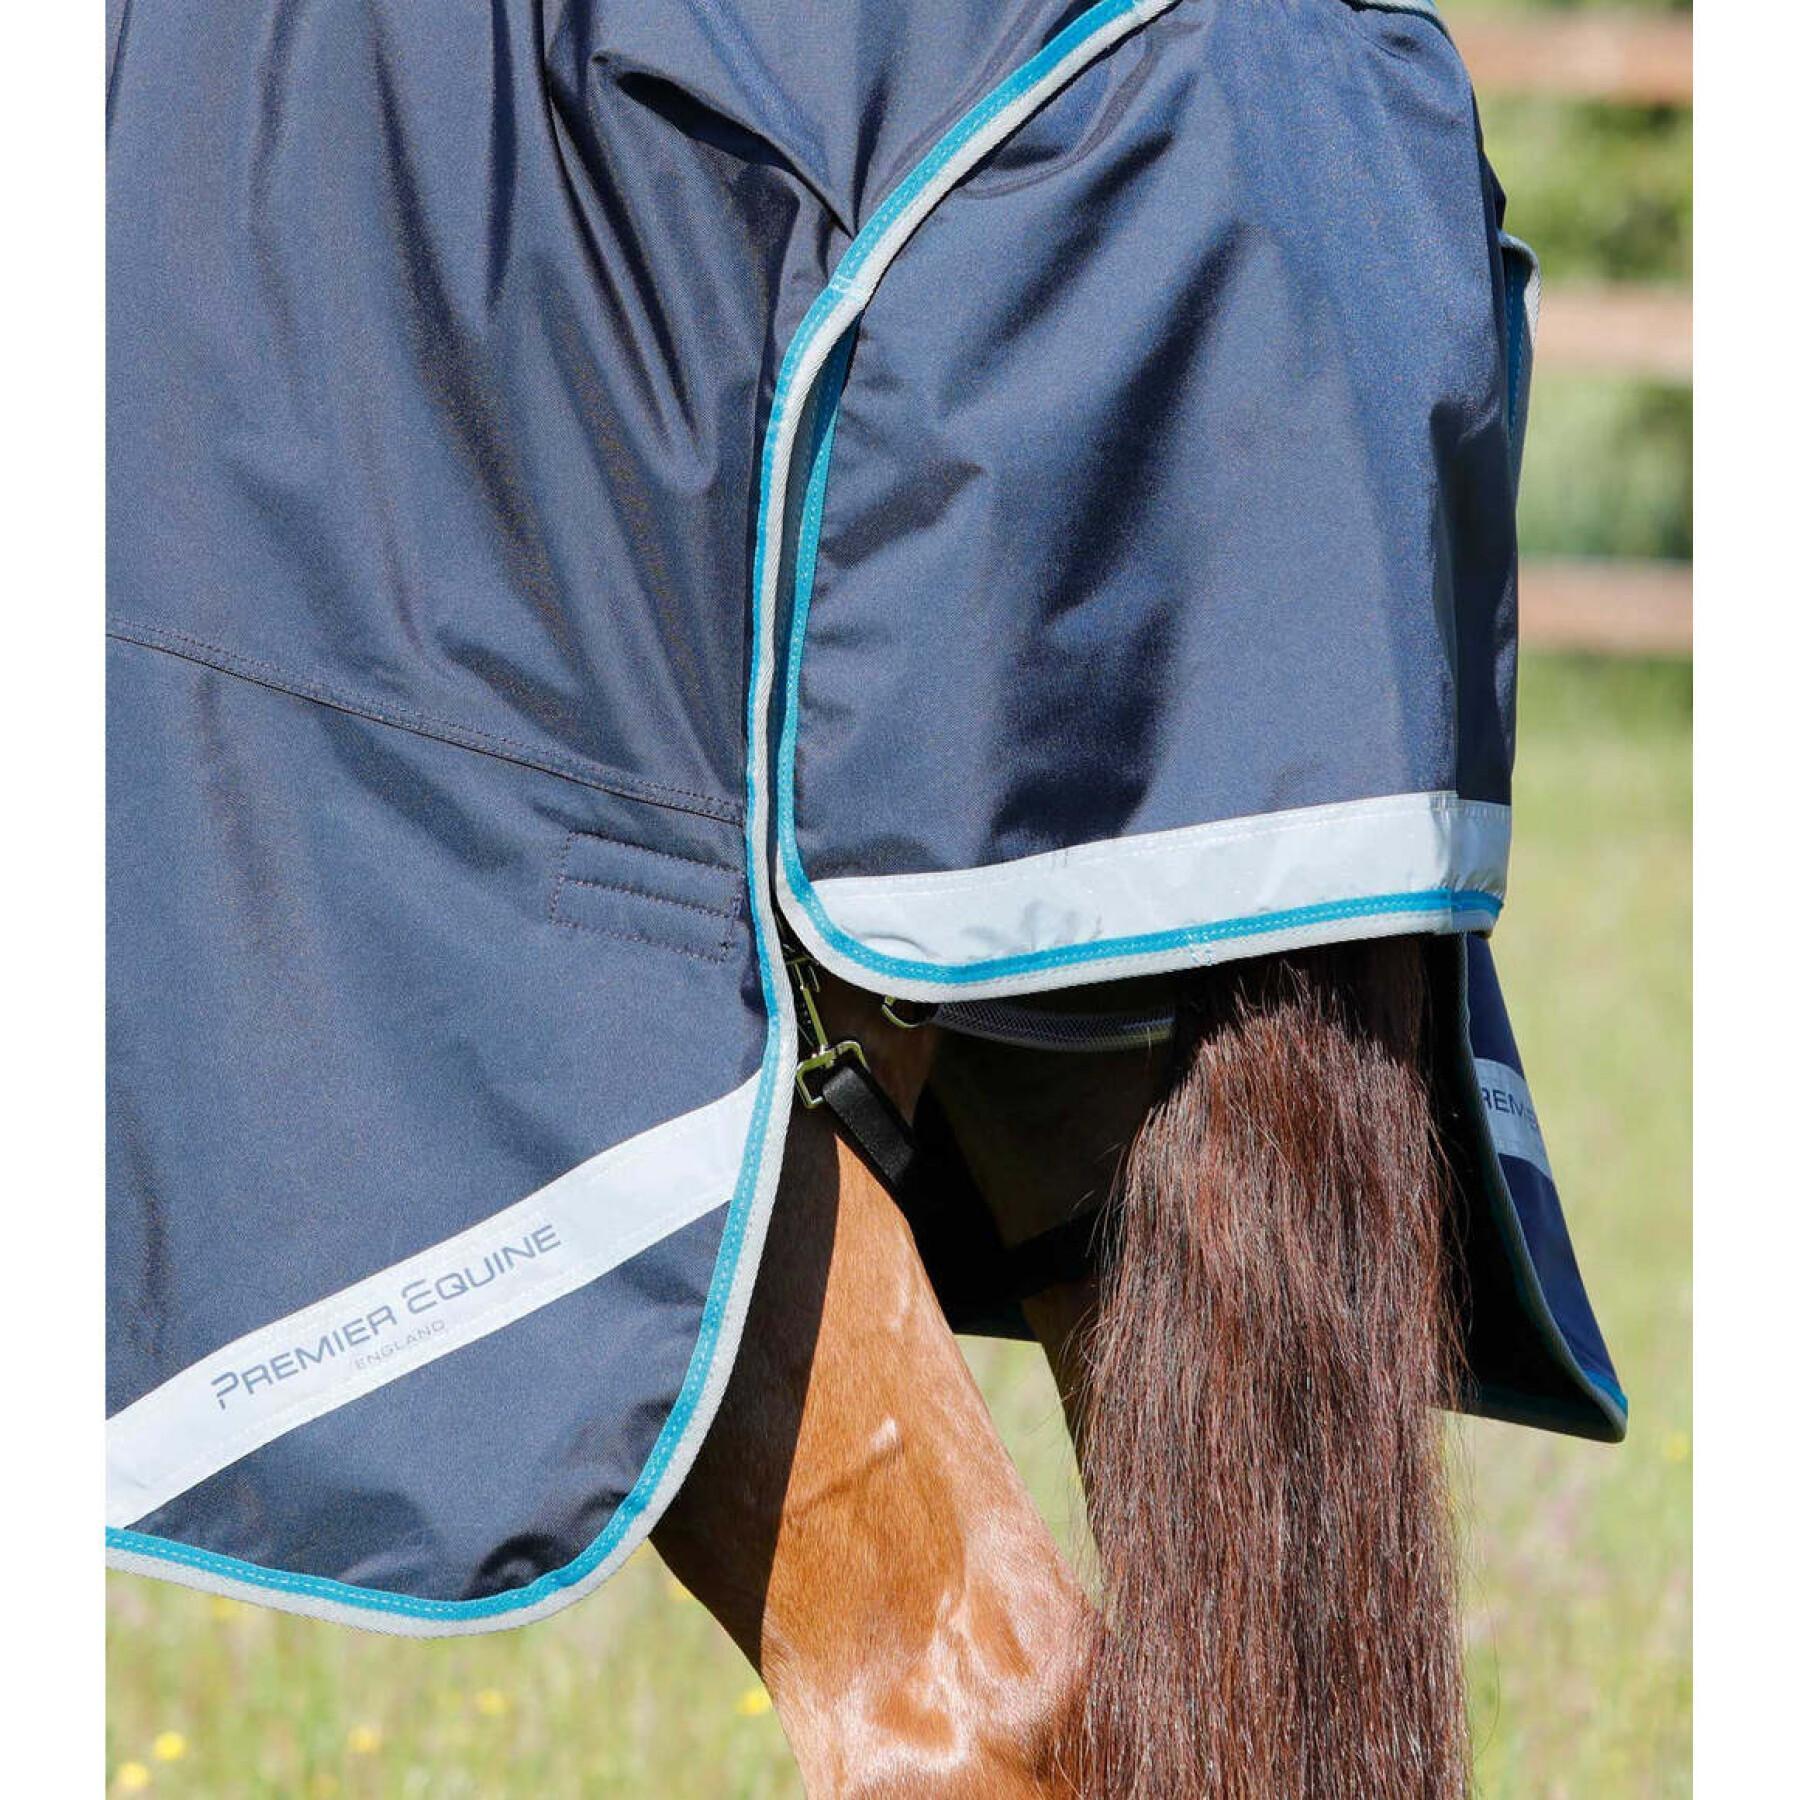 Protetor de pescoço para cavalos impermeável para cavalos com capa de pescoço Premier Equine Buster Storm 100 g